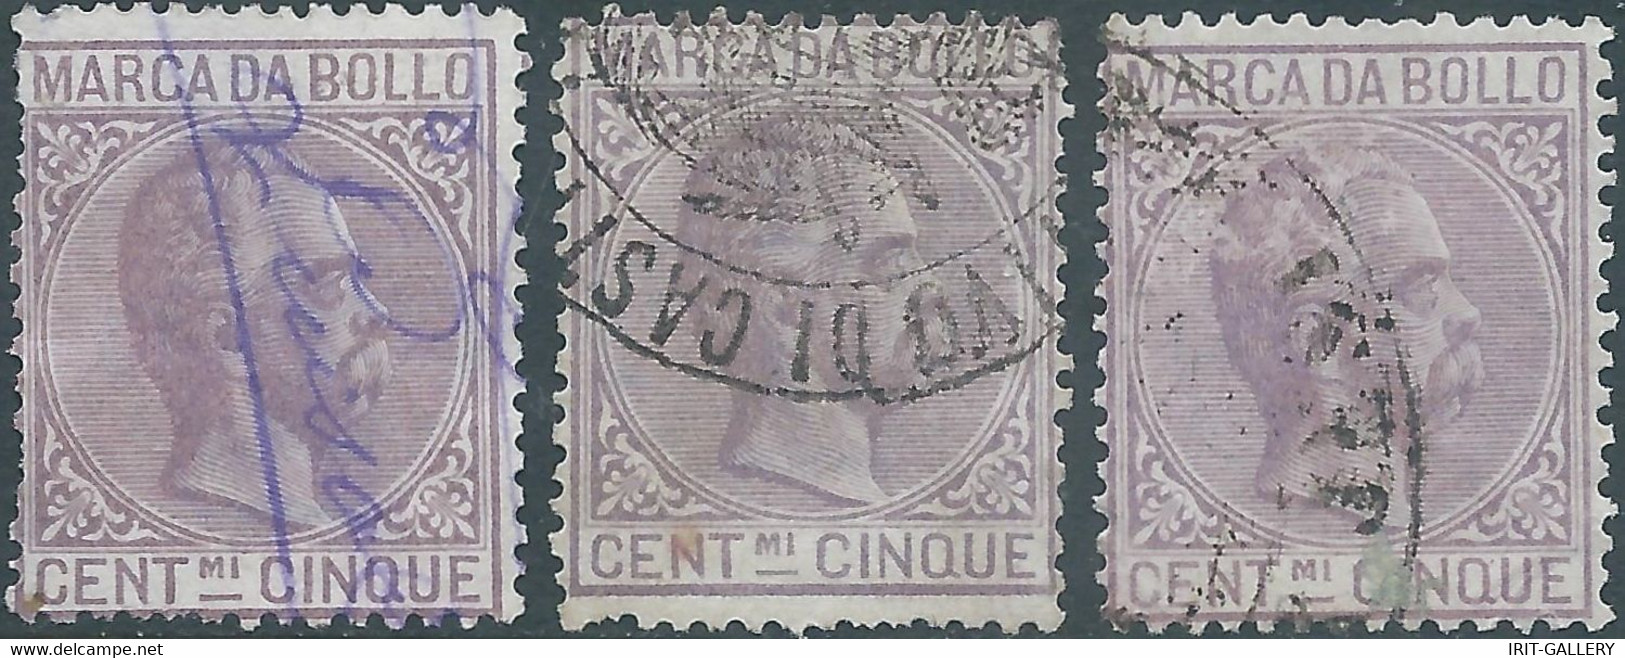 ITALIA-ITALY-ITALIEN,1882 Marca Da Bollo,Revenue Fiscal -Tax,3x 5Cent,Used - Fiscali